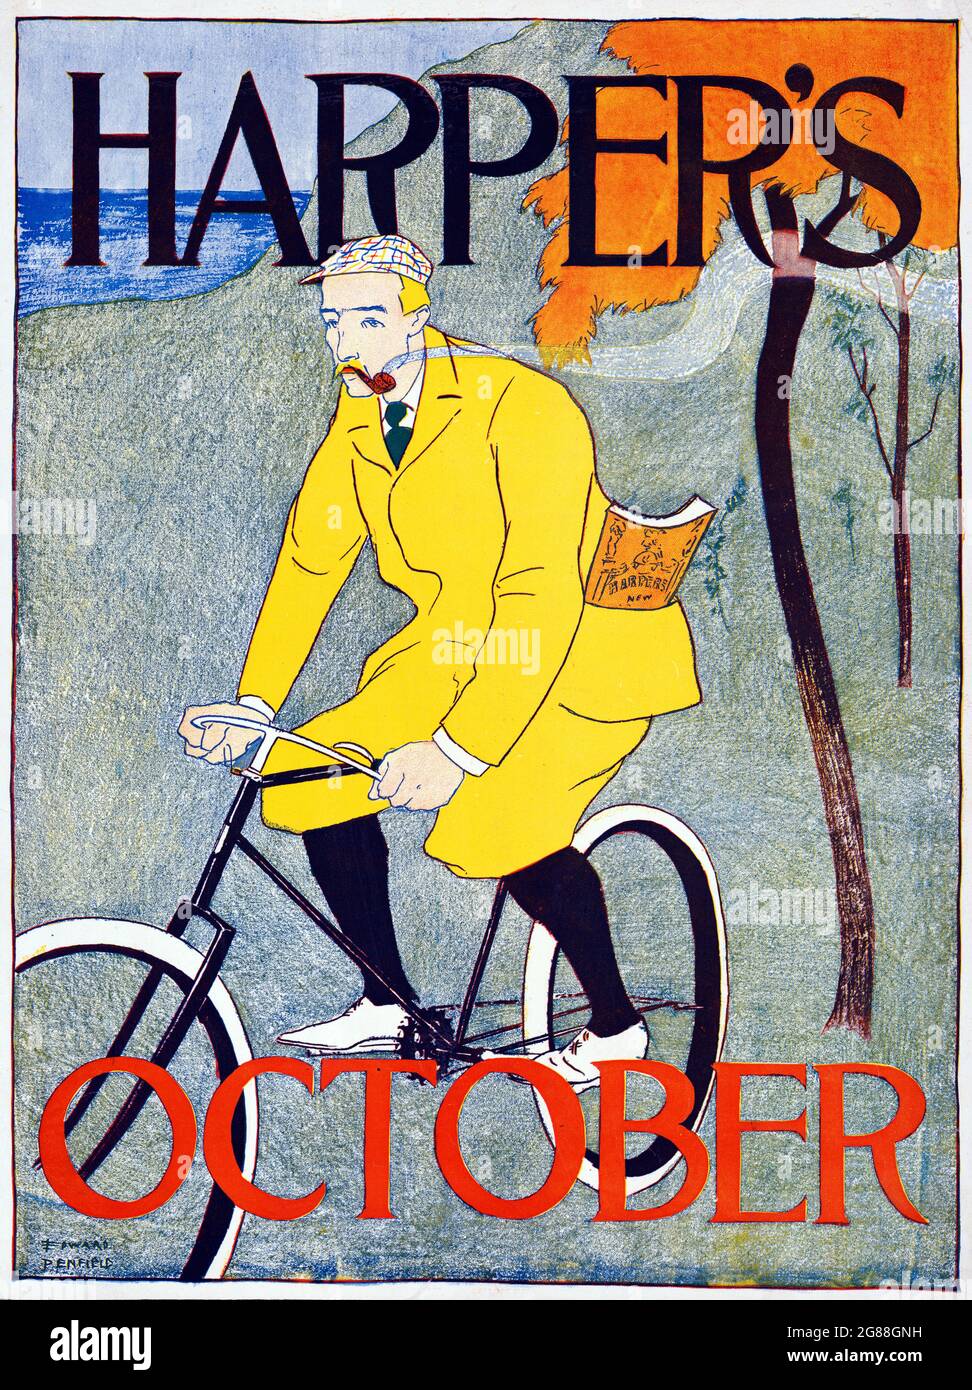 Poster: Harper's für Oktober – Künstler Edward Penfield,1866-1925, Künstler. 1894. Digital verbessert. Stockfoto